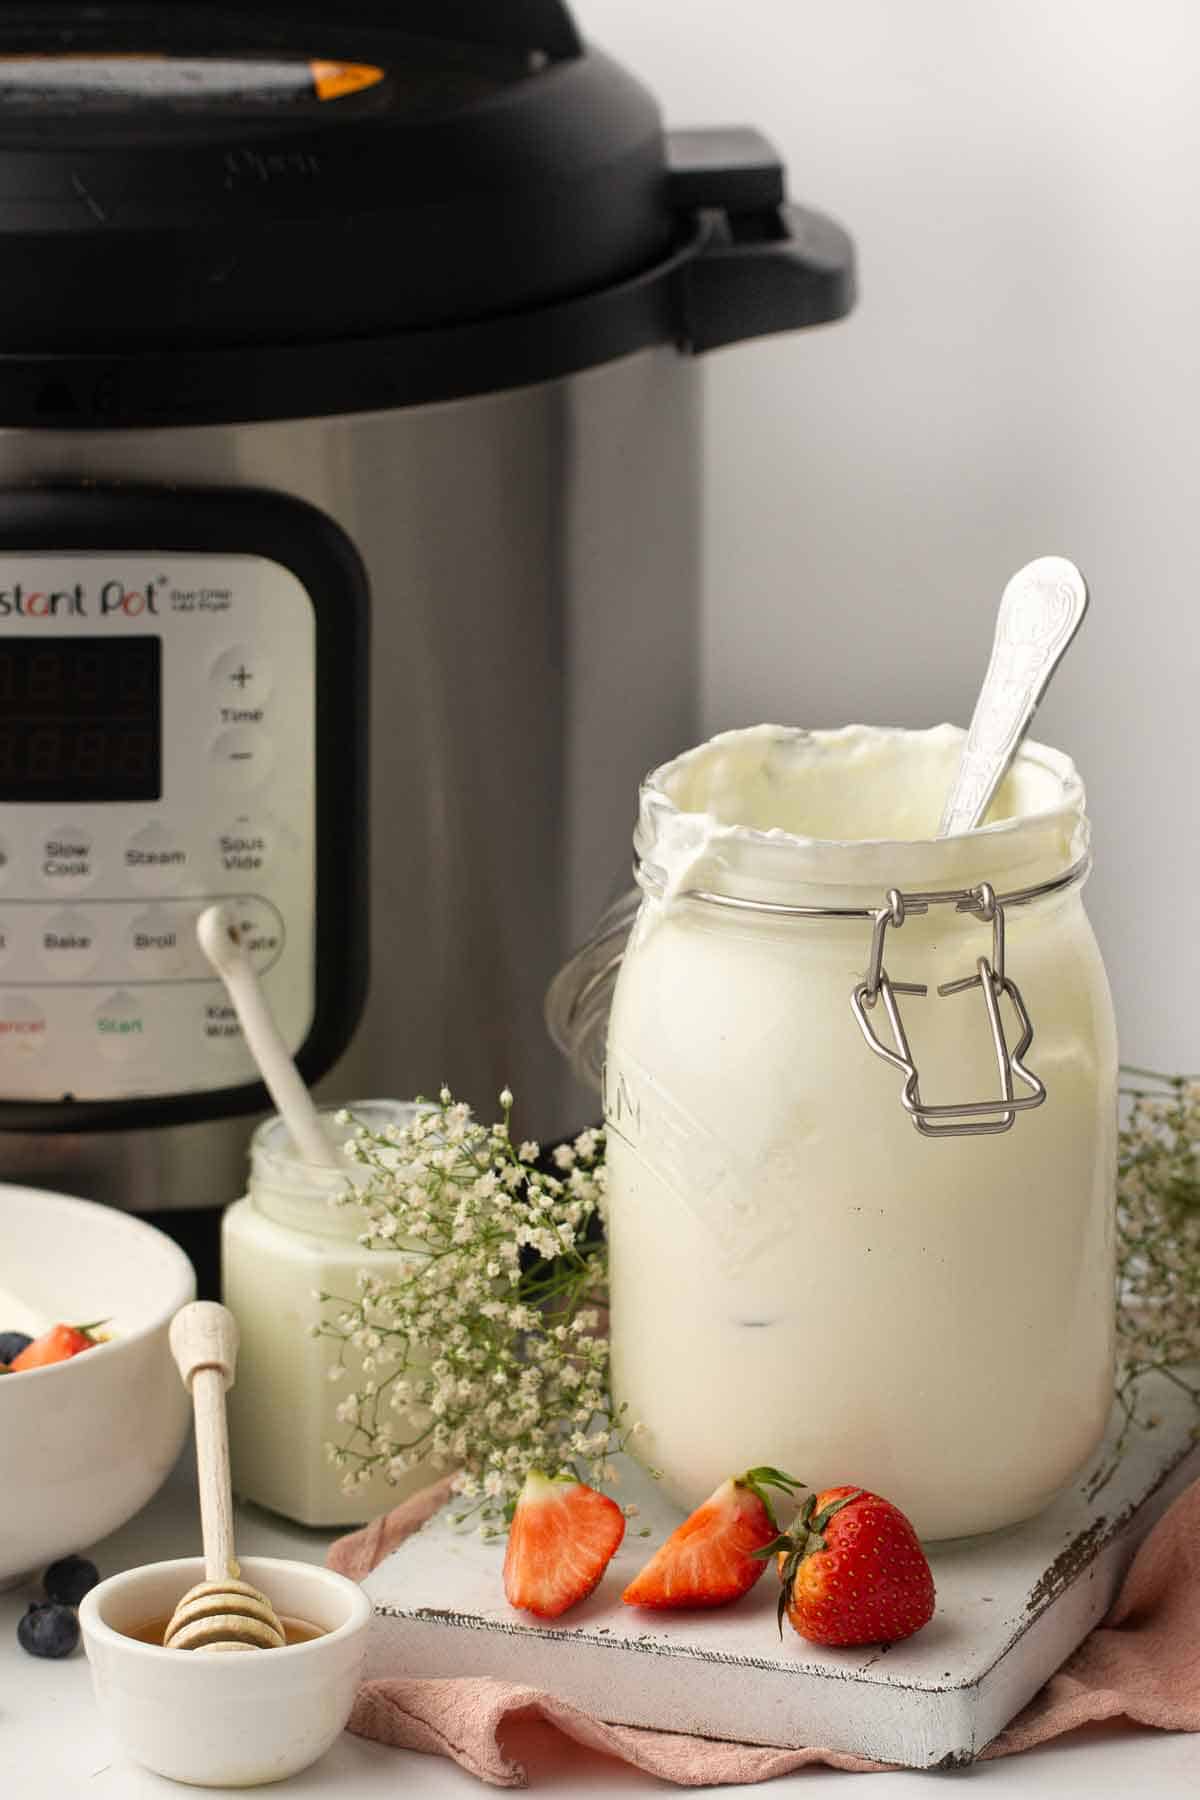 A jar of yogurt beside an instant pot.